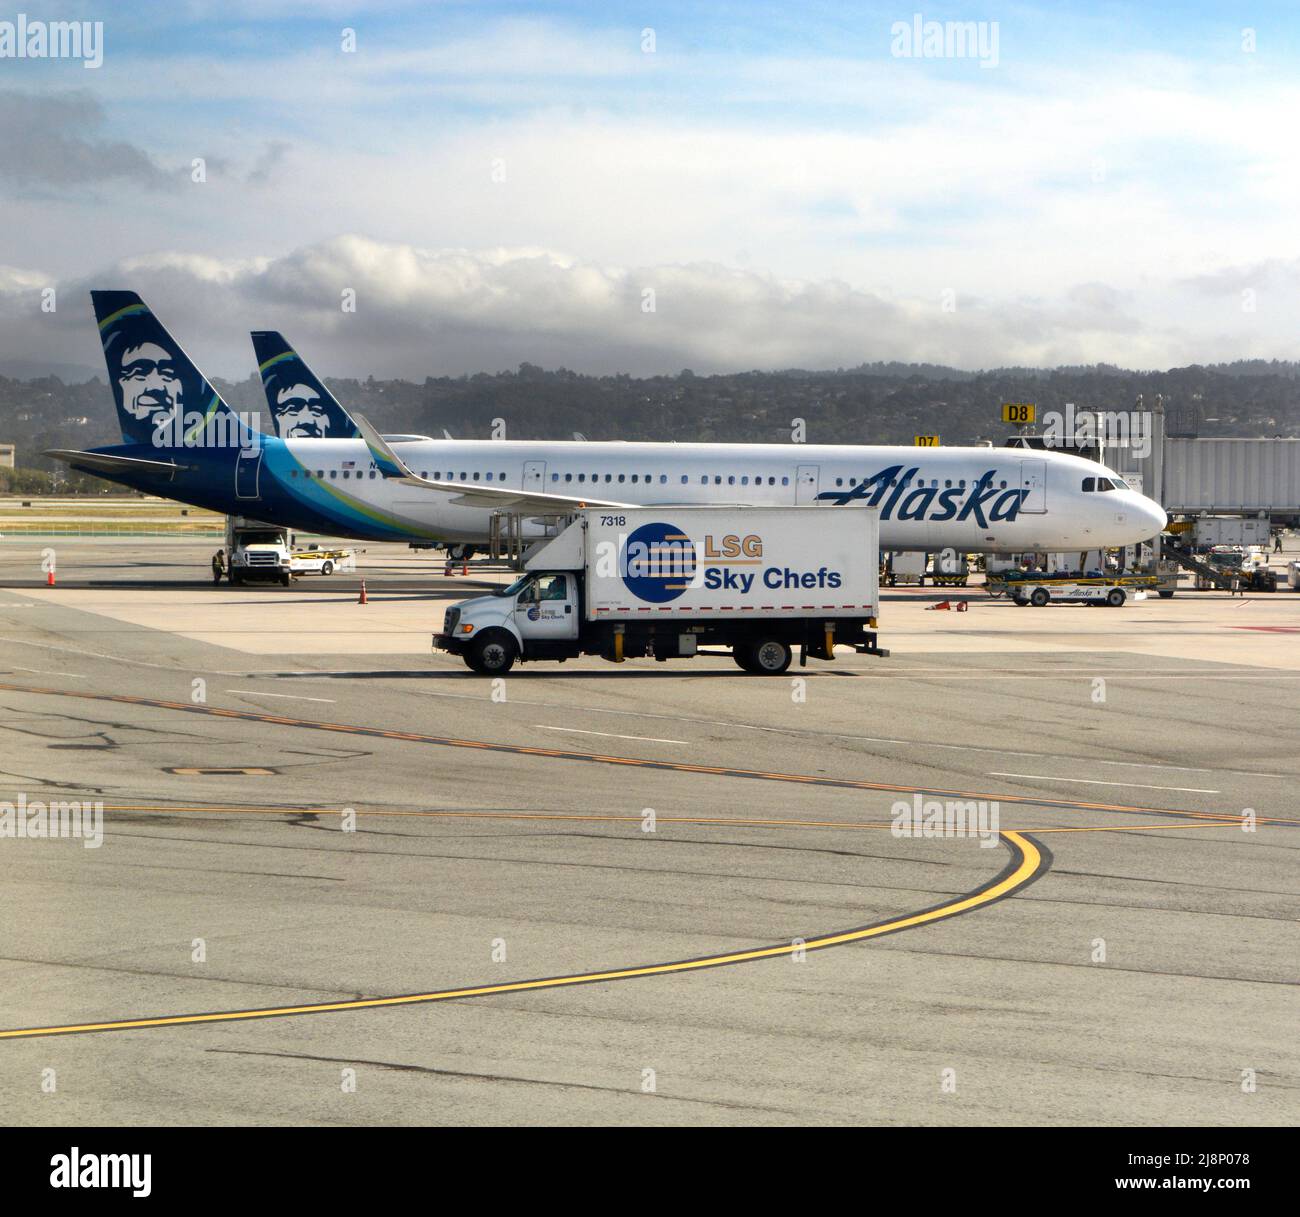 Un camion LSG Sky chefs et un avion de transport de passagers Alaska Airlines sur le tarmac à l'aéroport international de San Francisco à San Francisco, en Californie. Banque D'Images